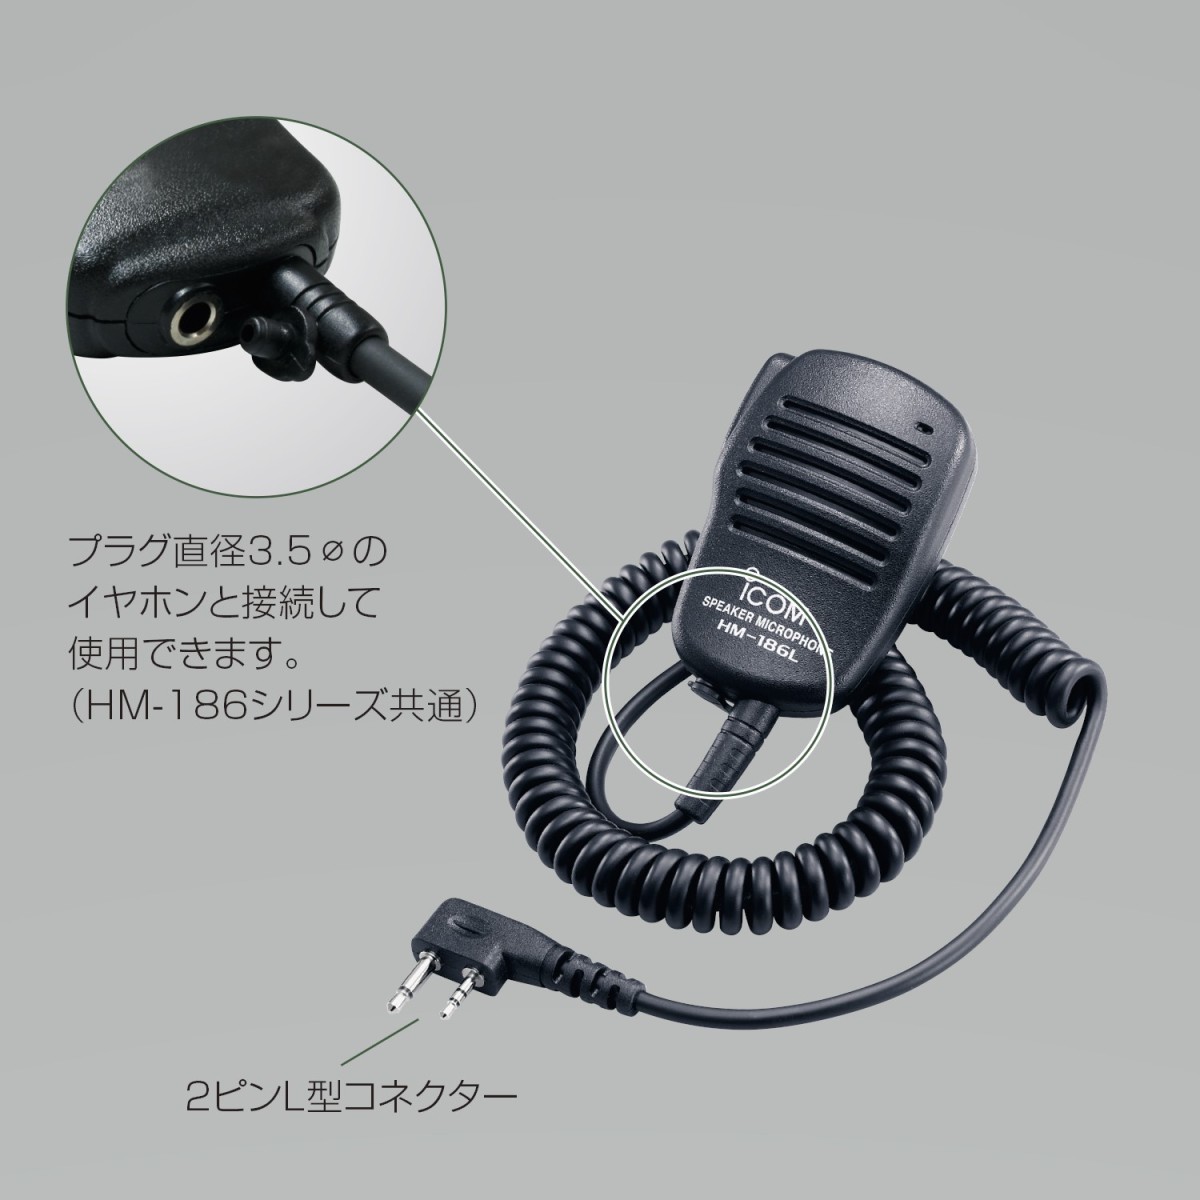 ◆ICOM アイコム HM-74 小型スピーカーマイクロフォン